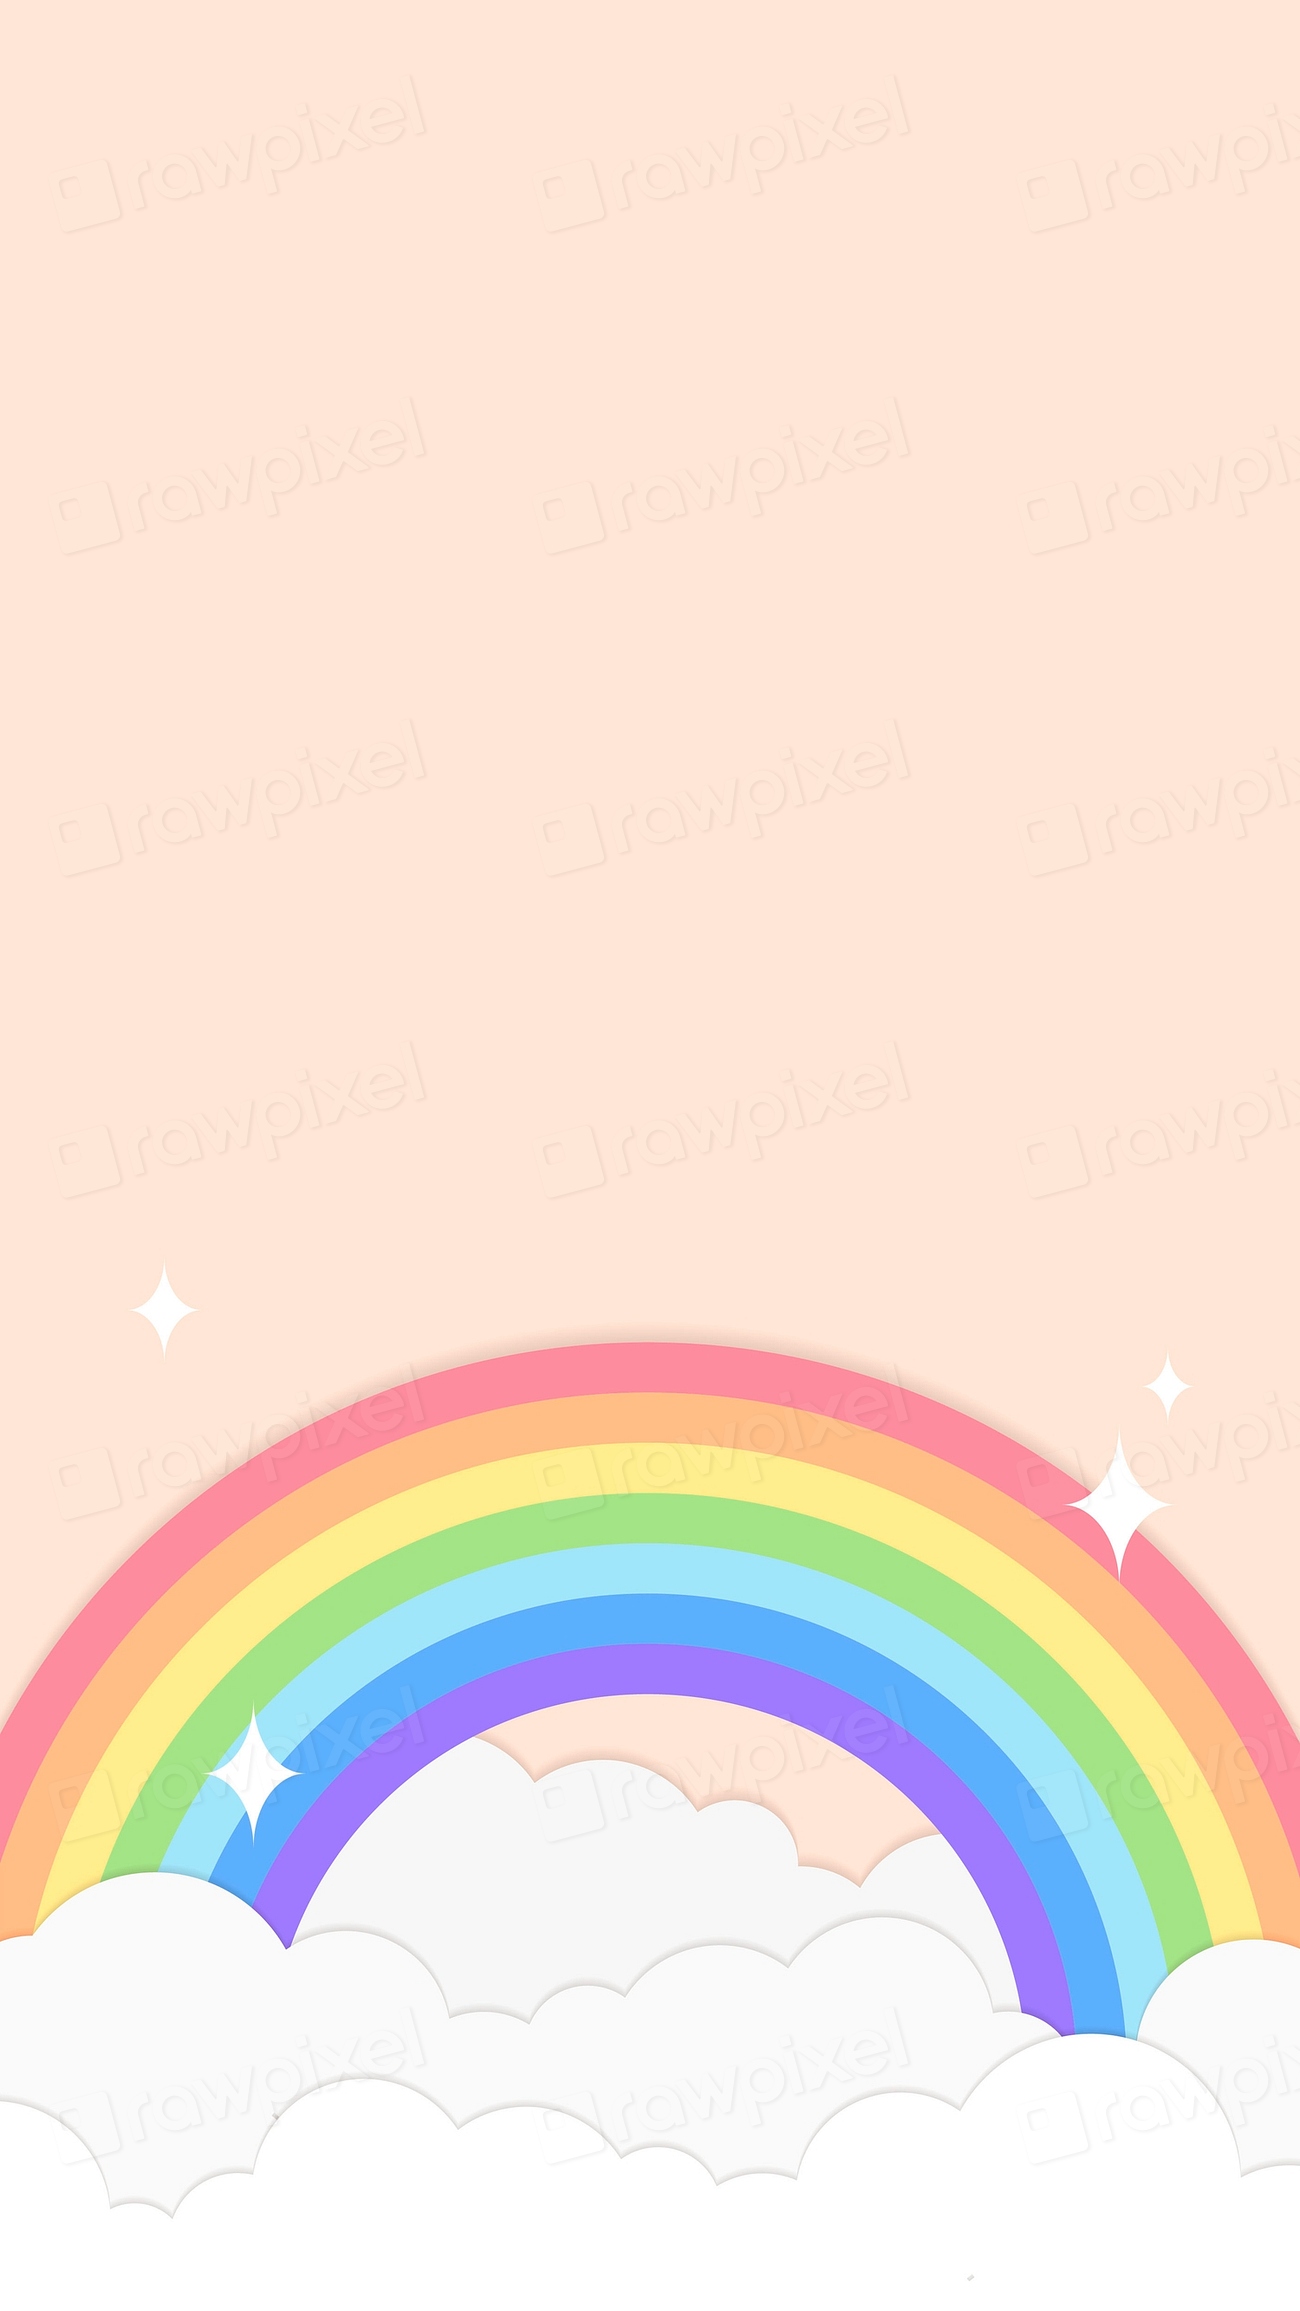 Rainbow mobile wallpaper, cute phone | Premium Vector - rawpixel